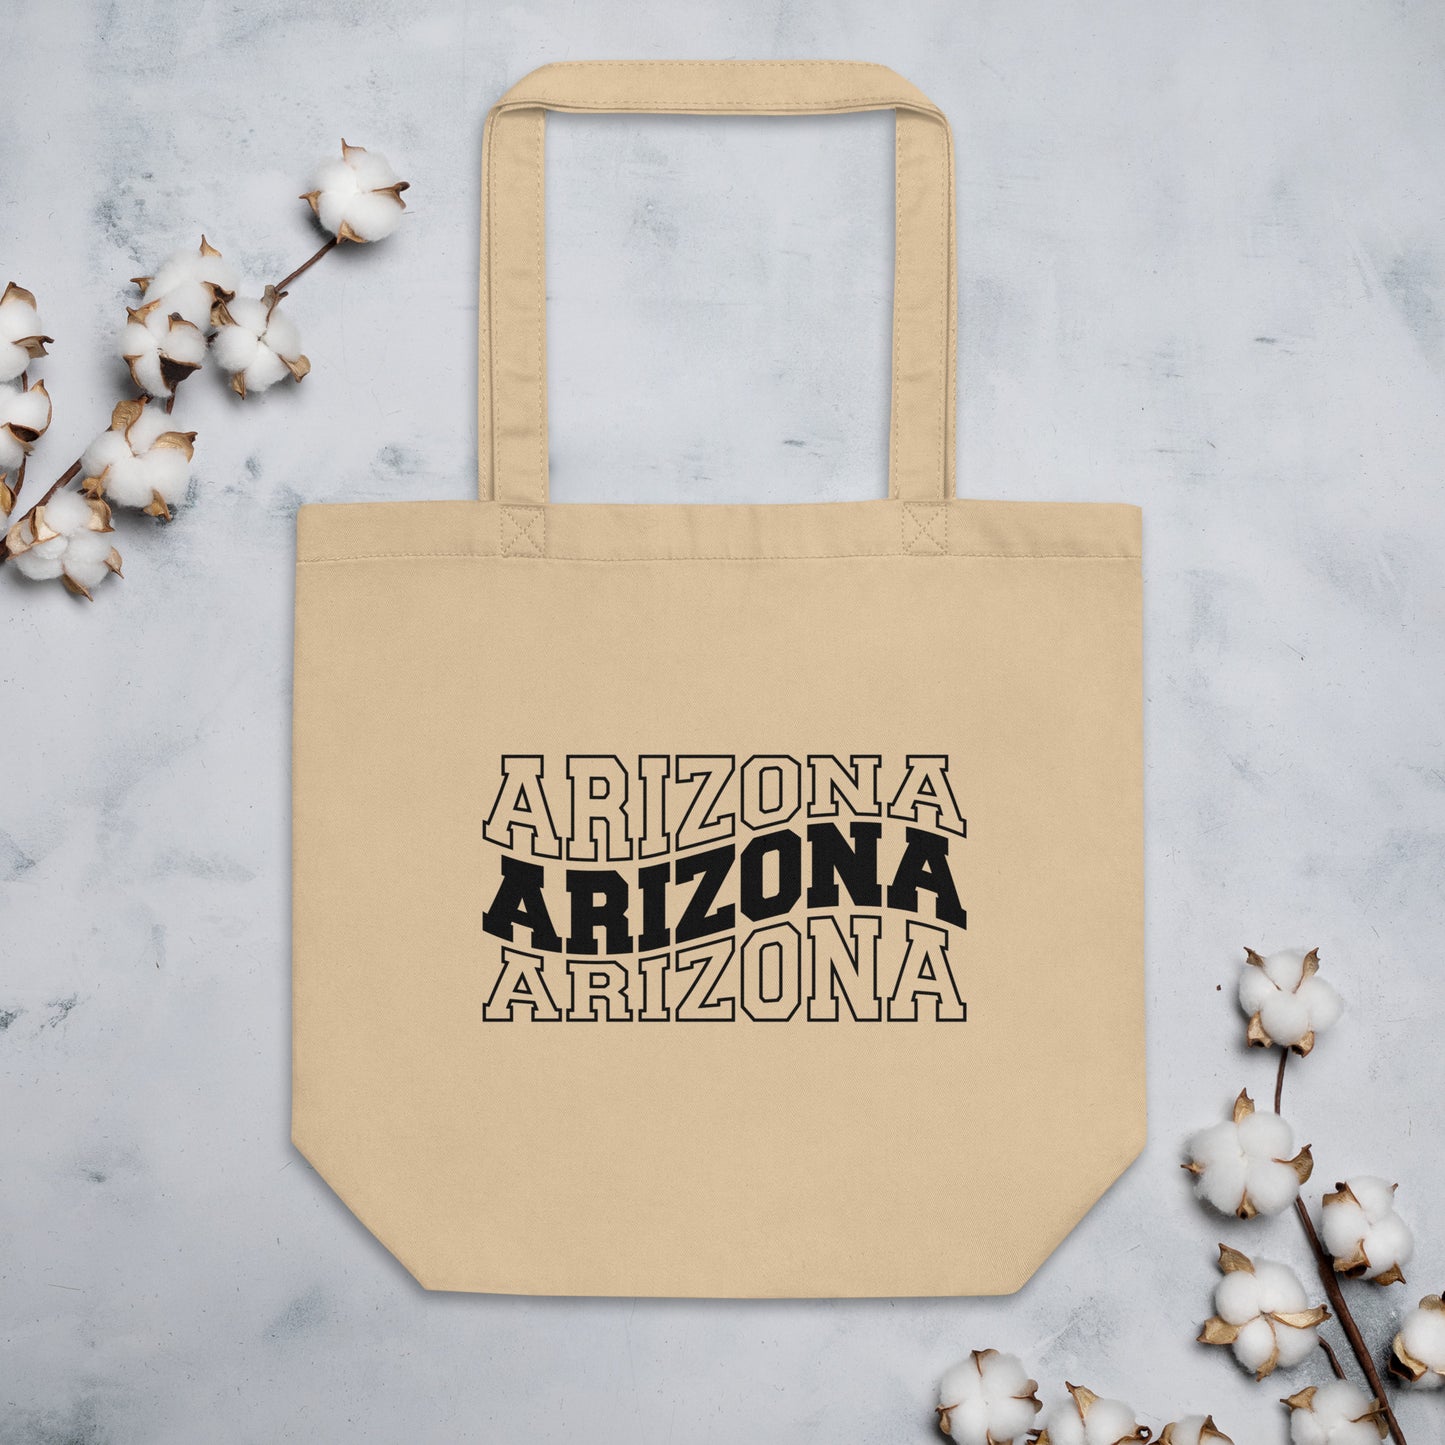 Arizona Eco Tote Bag